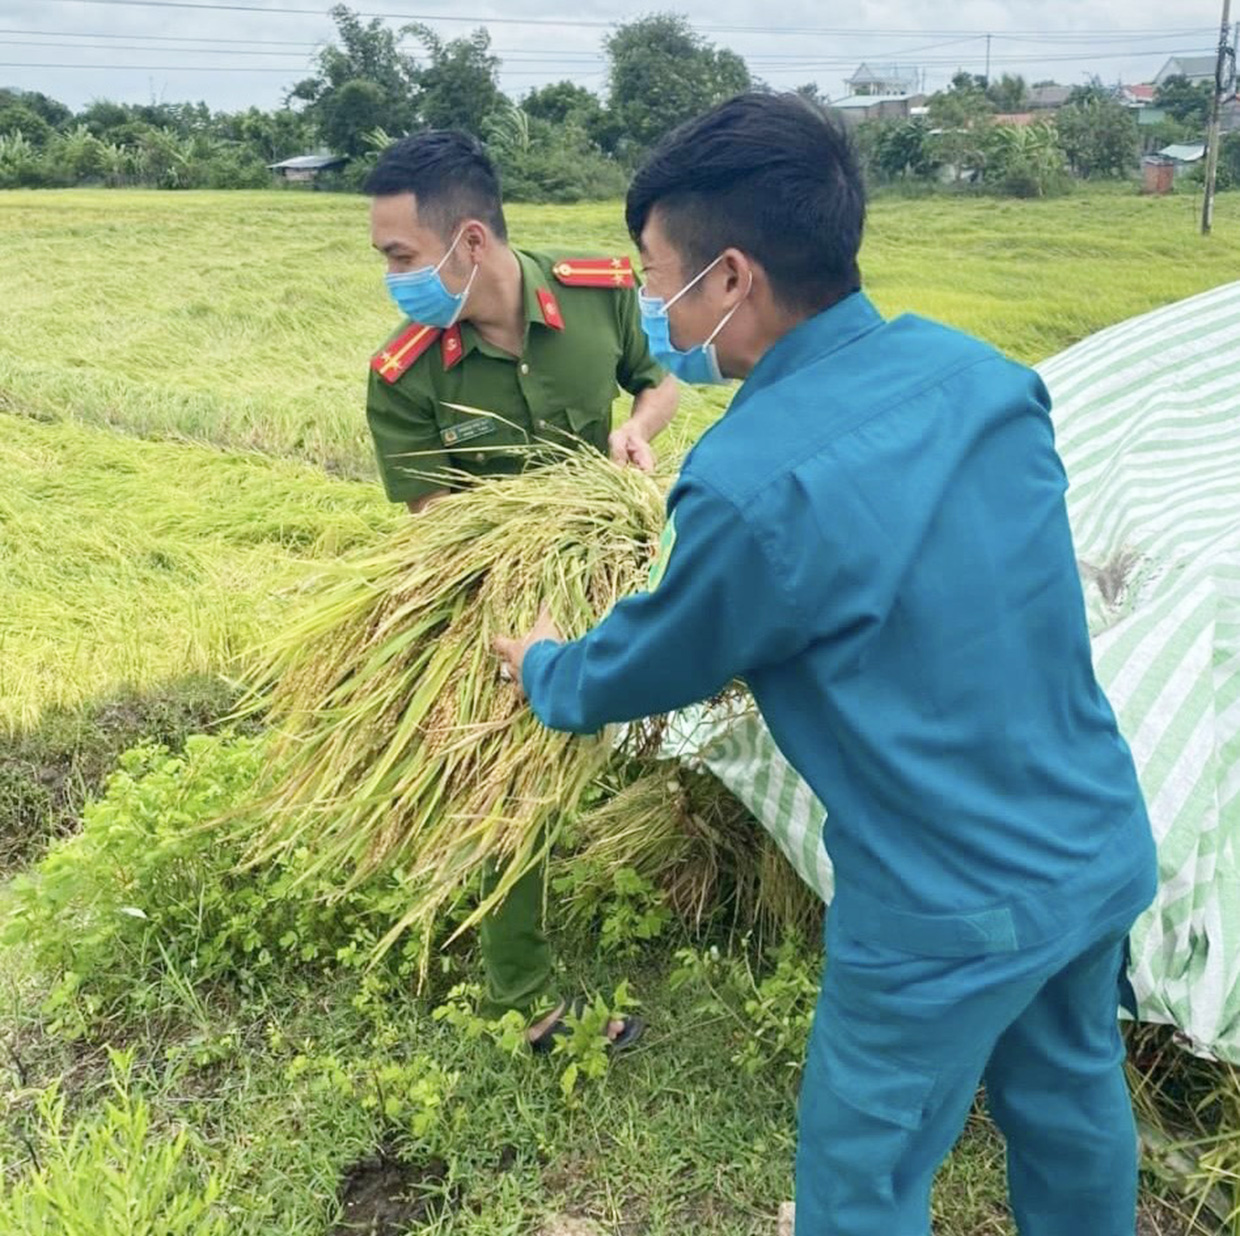 Công an xã Ayun Hạ (huyện Phú Thiện) cùng dân quân xã giúp người dân thu hoạch lúa bị ảnh hưởng của bão số 4 (ảnh Fanpage Công an huyện Phú Thiện).